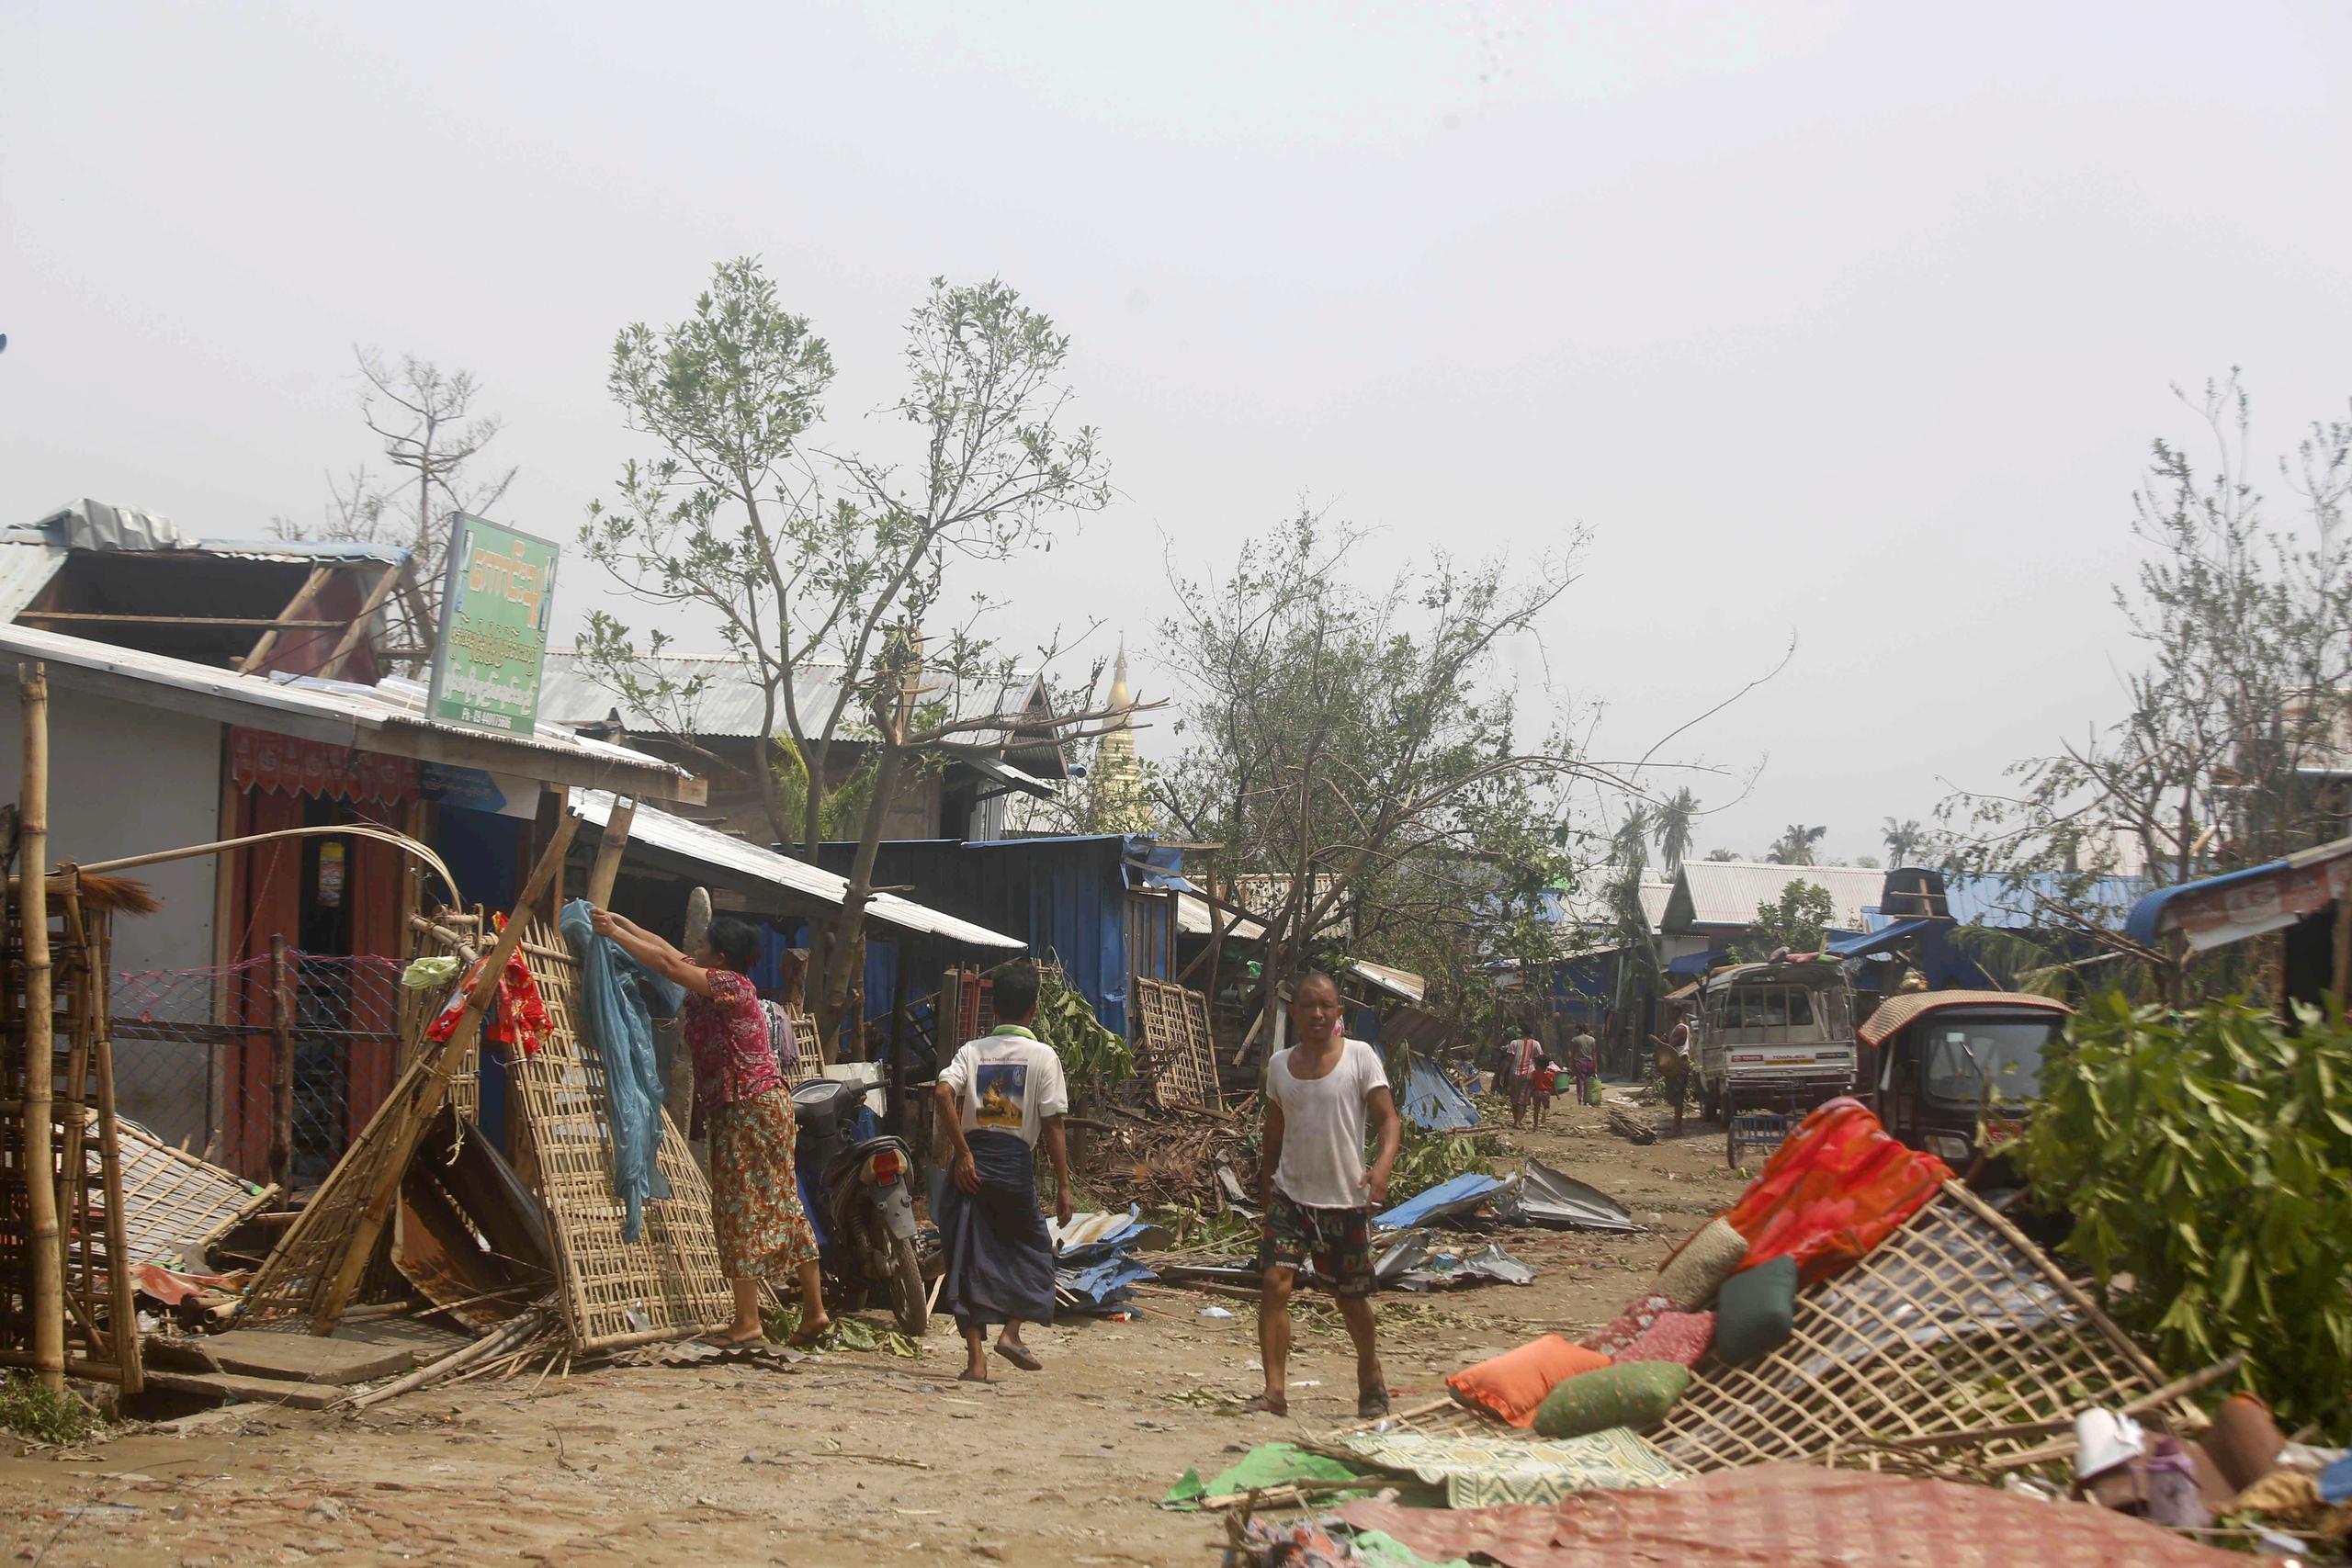 La situación en los campamentos de refugiados rohinyás en Bangladesh, con casi un millón de personas viviendo en muy precarias condiciones, fue una de las principales preocupaciones de las agencias humanitarias